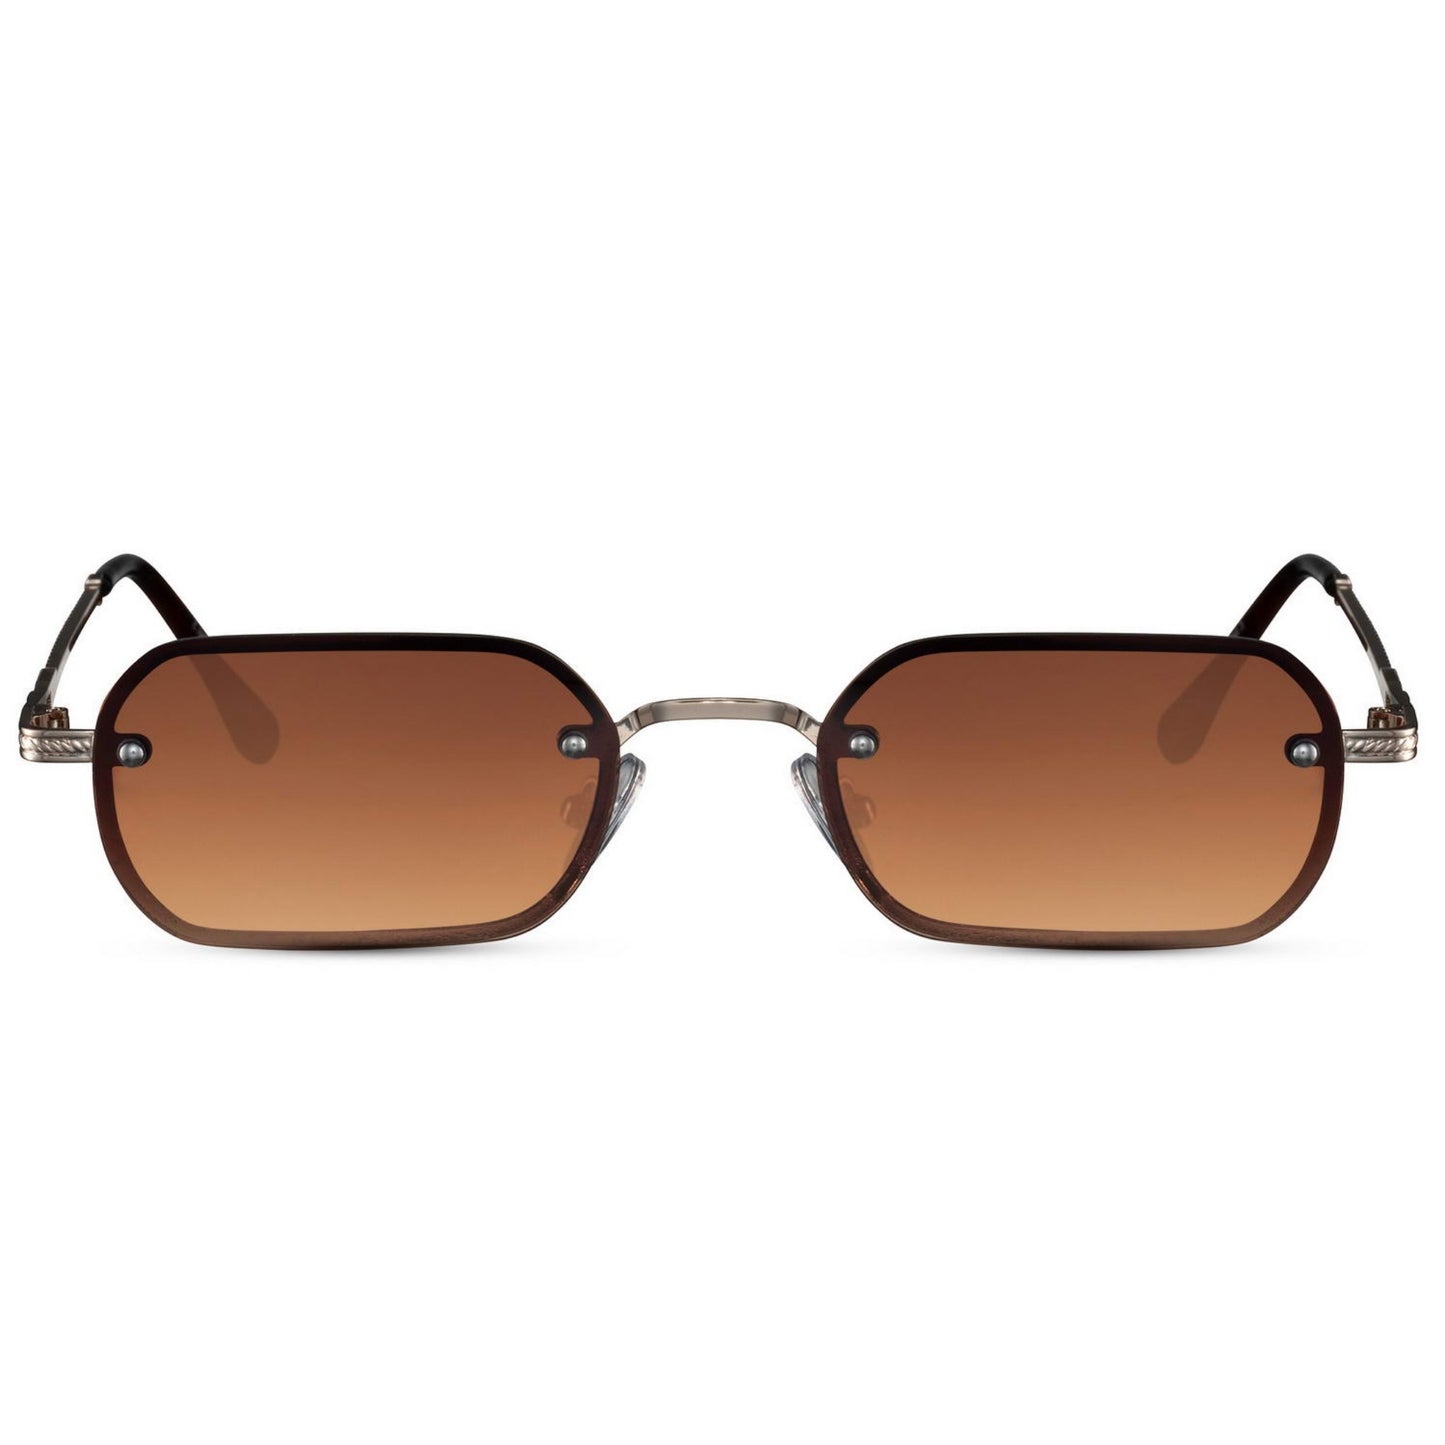 Ορθογώνια Γυαλιά ηλίου New York από την Exposure Sunglasses με προστασία UV400 με χρυσό σκελετό και καφέ φακό.